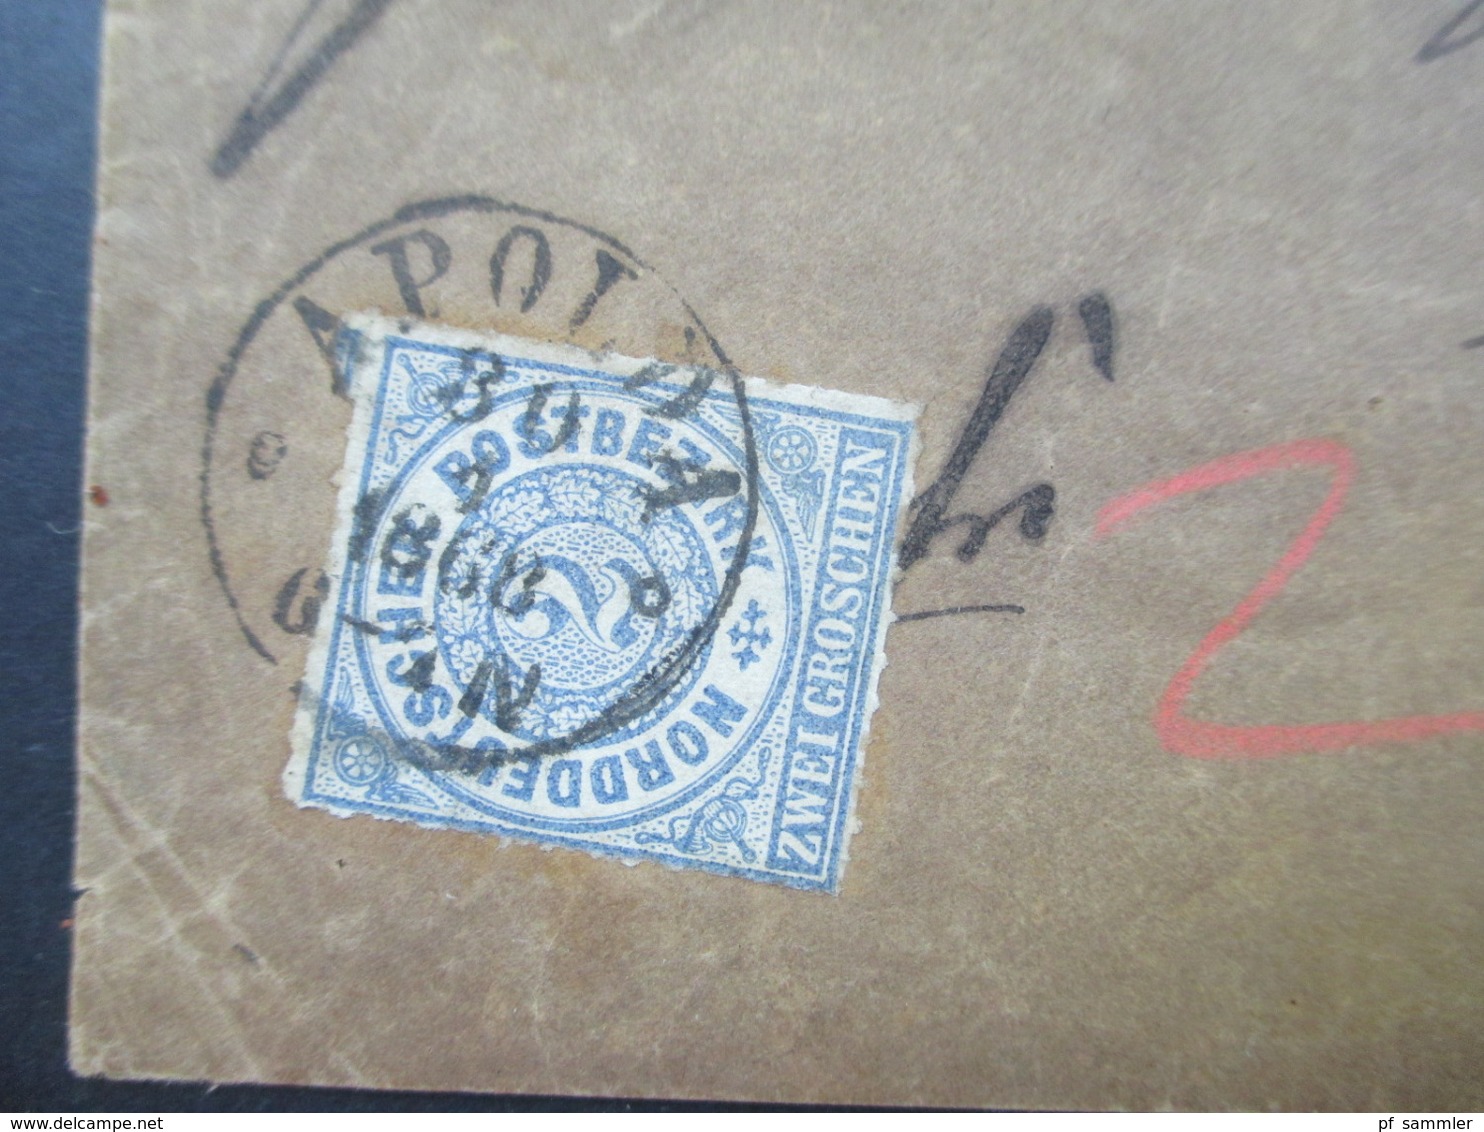 AD NDP Nr. 5 EF Frühe Verwendung Im Ersten Monat 30.1.1868 Stempel K1 Apolda Wertbrief - Covers & Documents